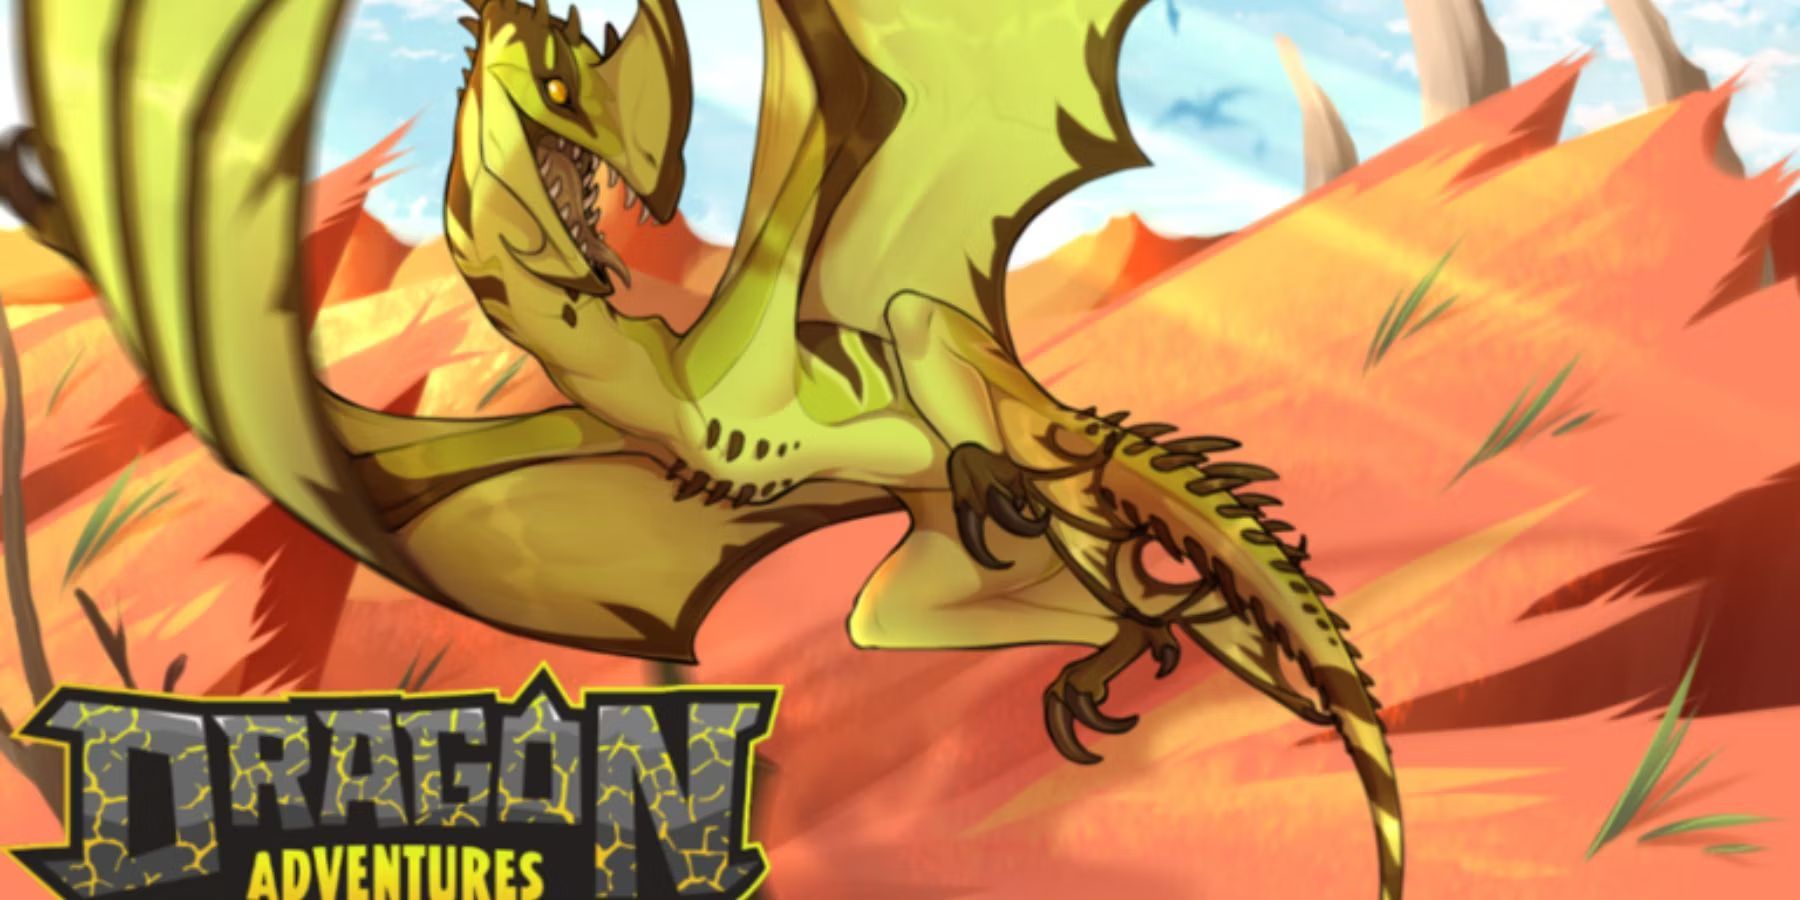 Roblox: Dragon Adventures Codes